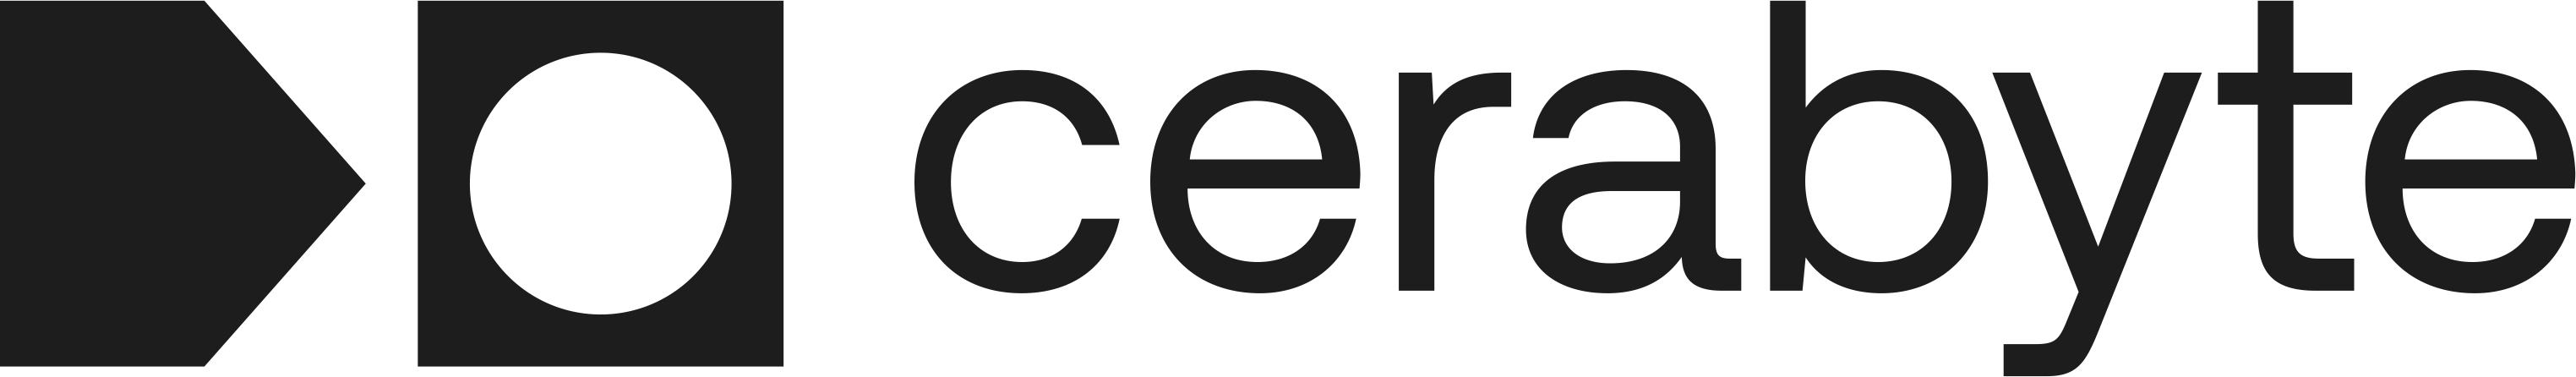 cerabyte logo schrift schwarz